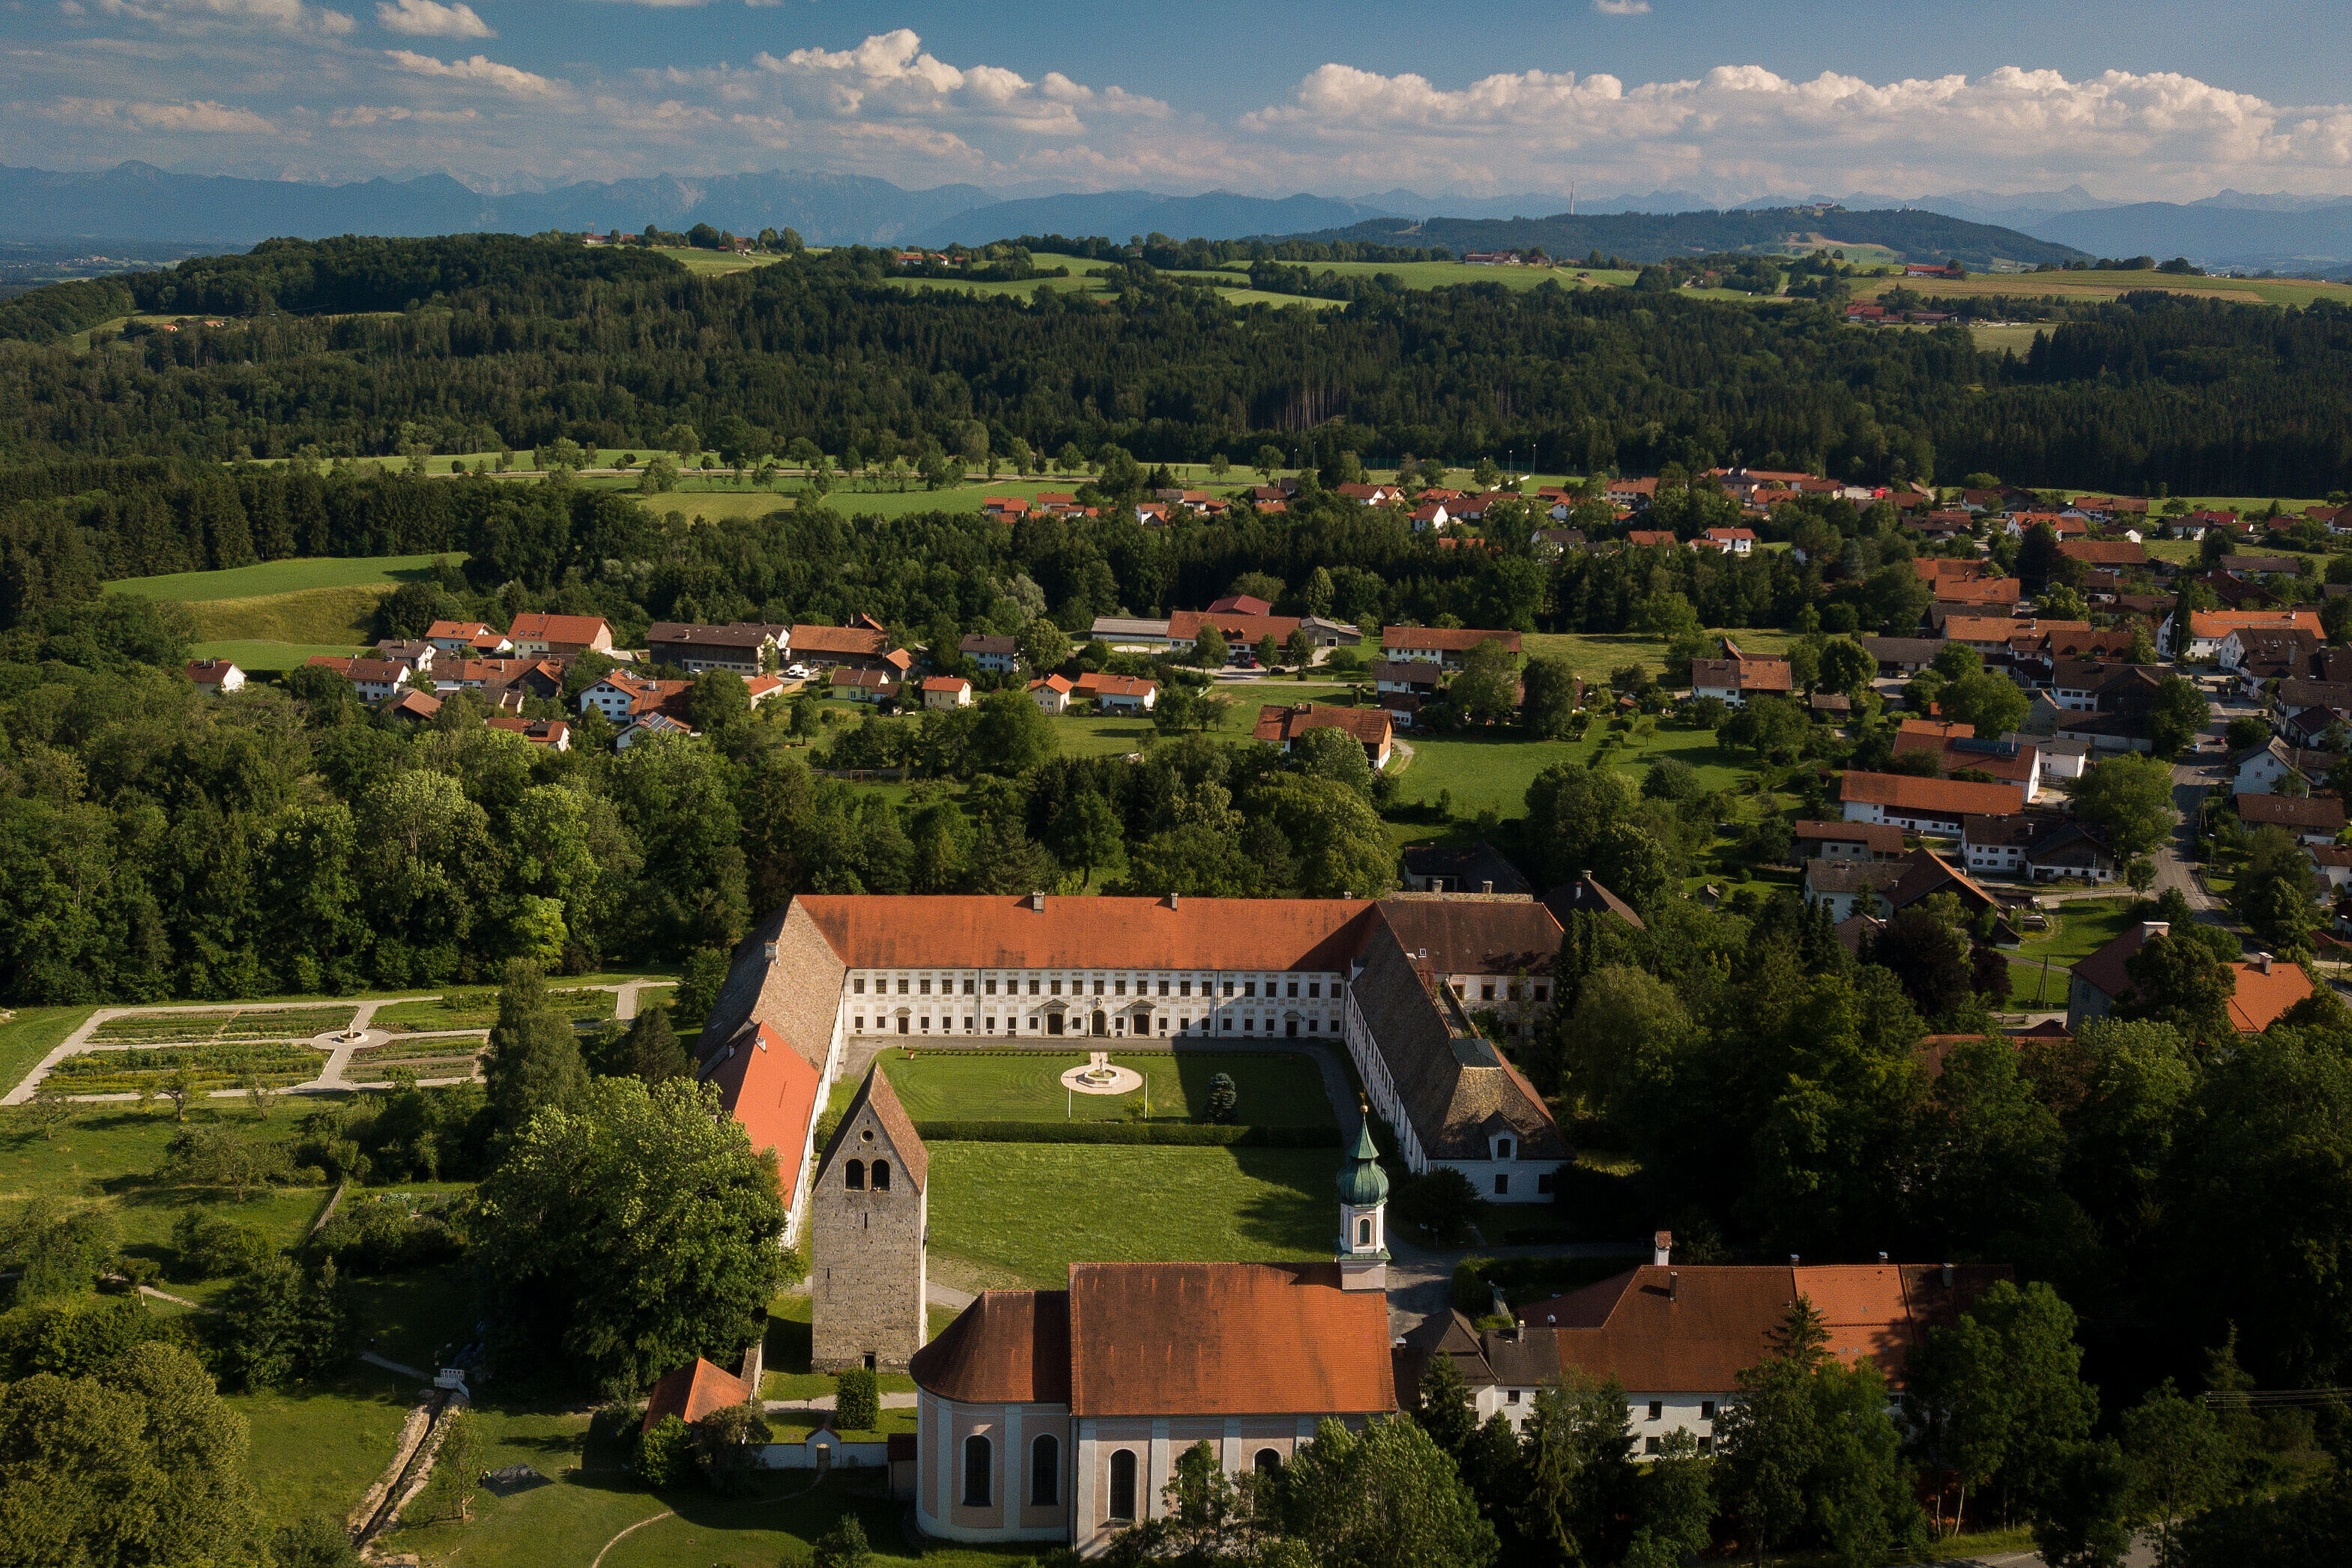 Luftaufnahme des Wessobrunner Kloster in Mitten der sanft hügeligen Landschaft des Pfaffenwinkels.